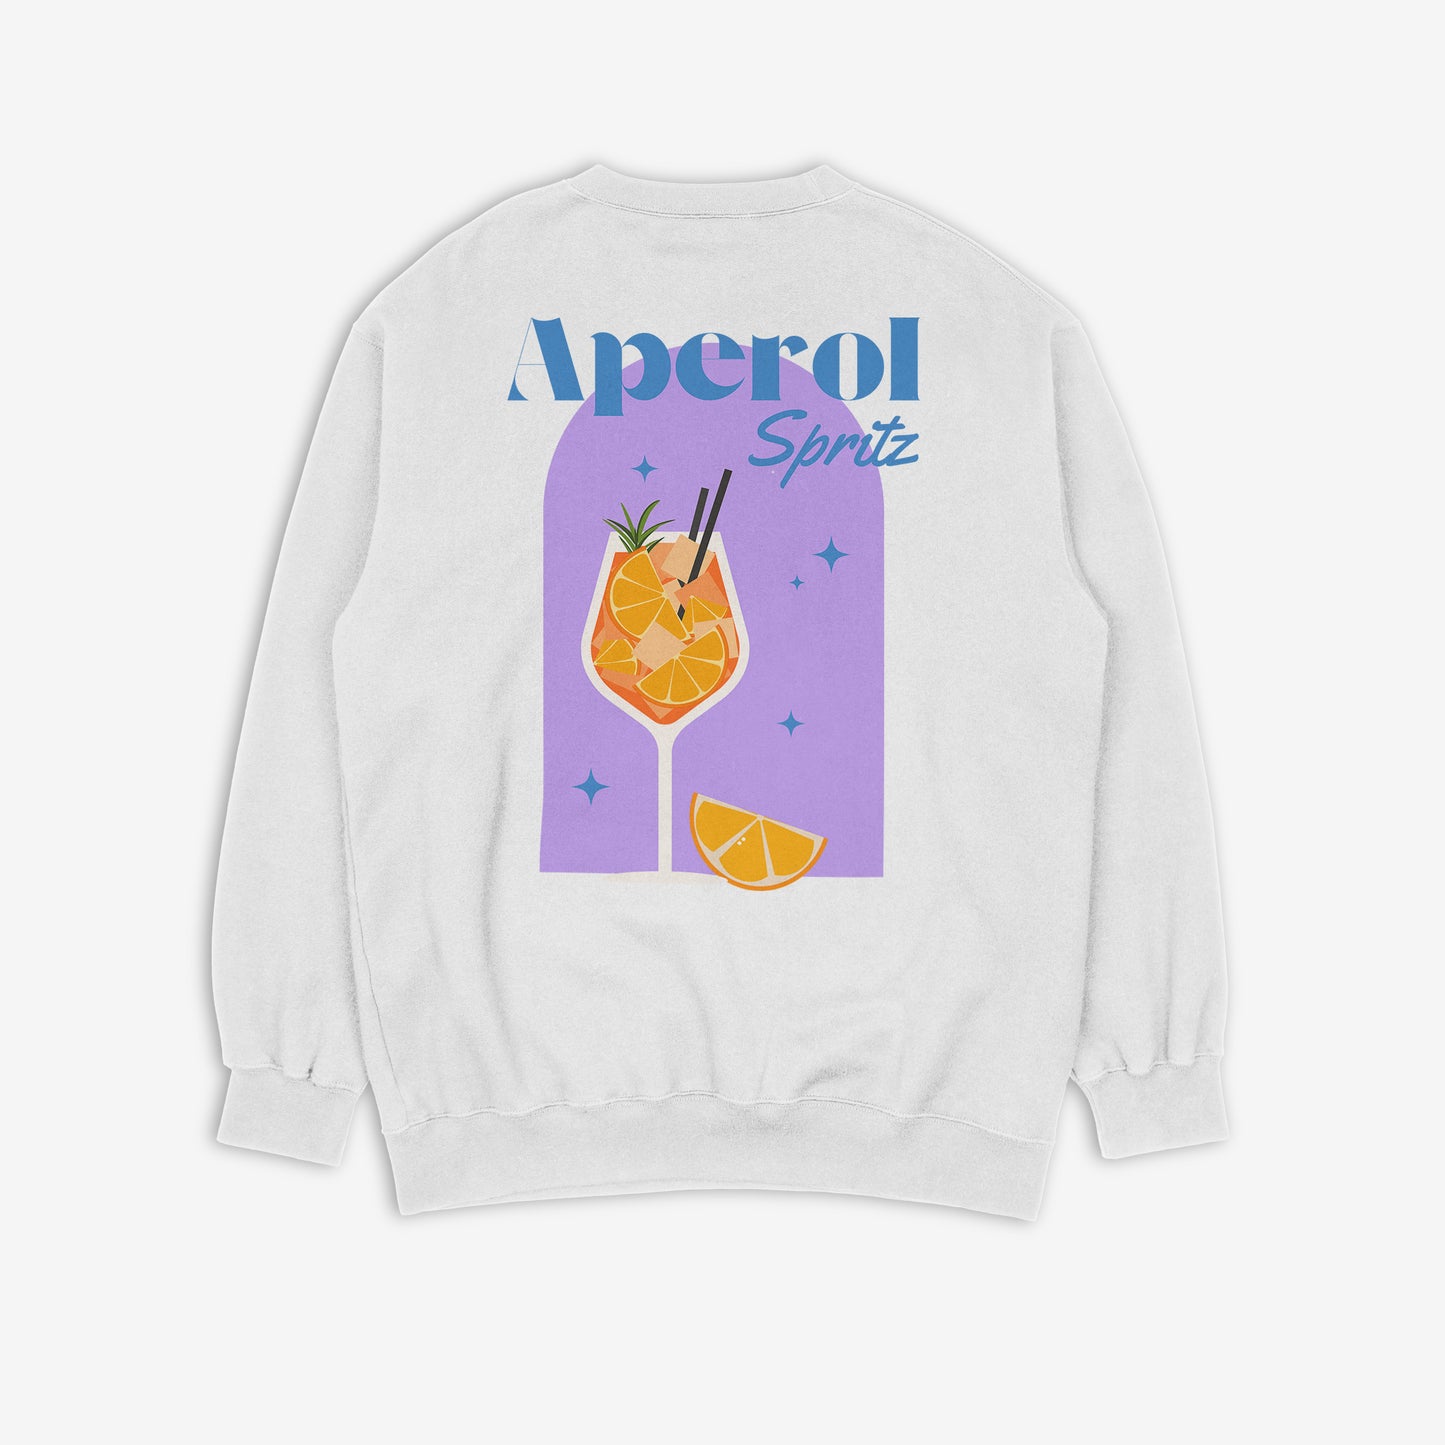 Aperol Spritz Sweatshirt